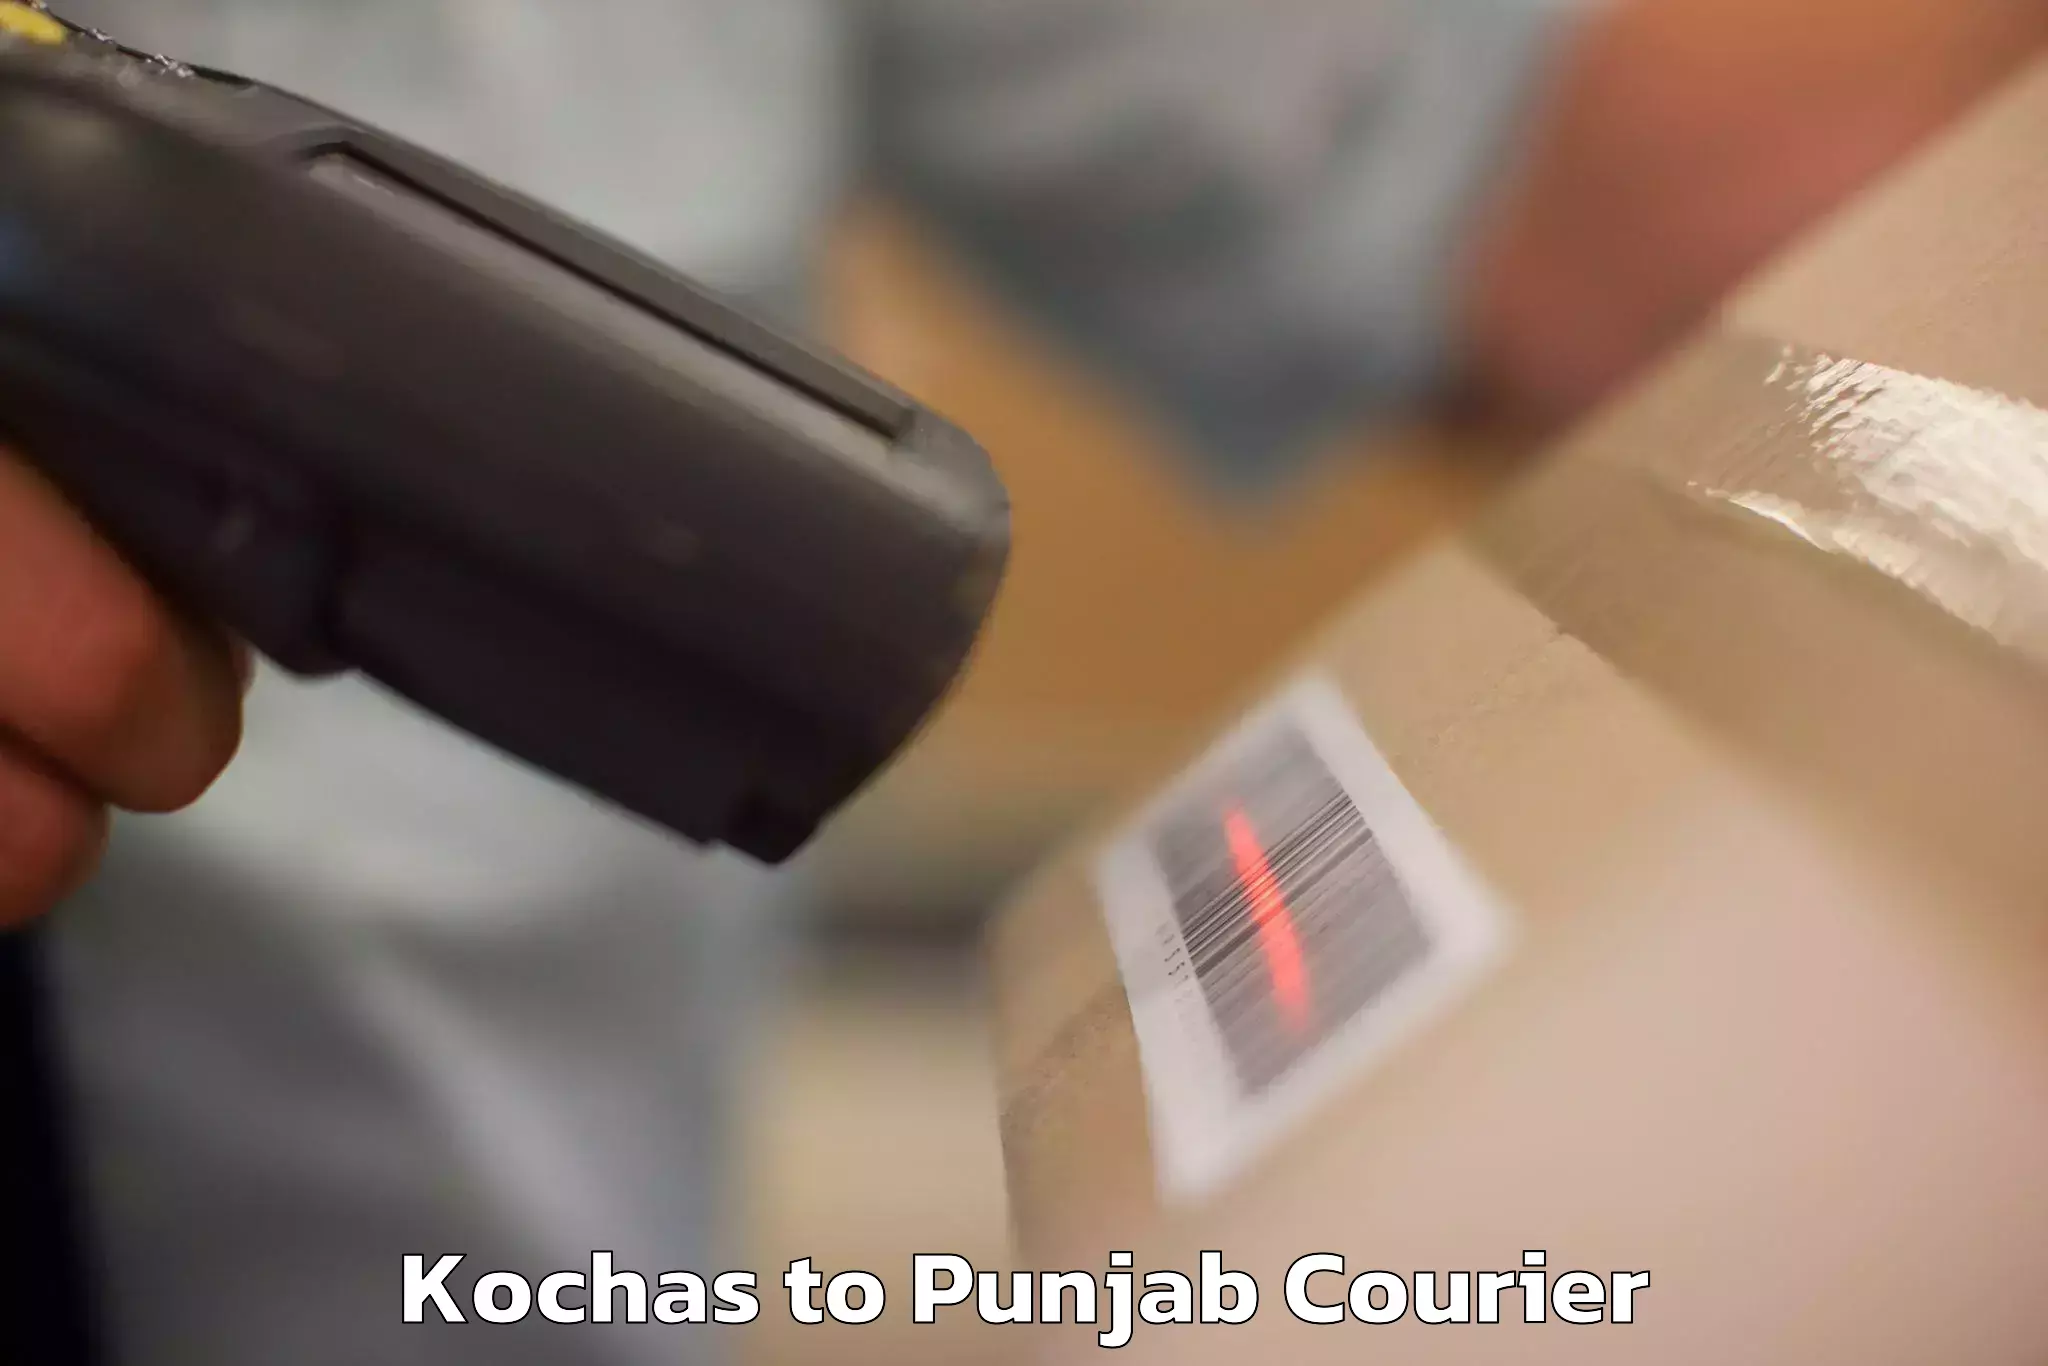 Luggage dispatch service Kochas to Punjab